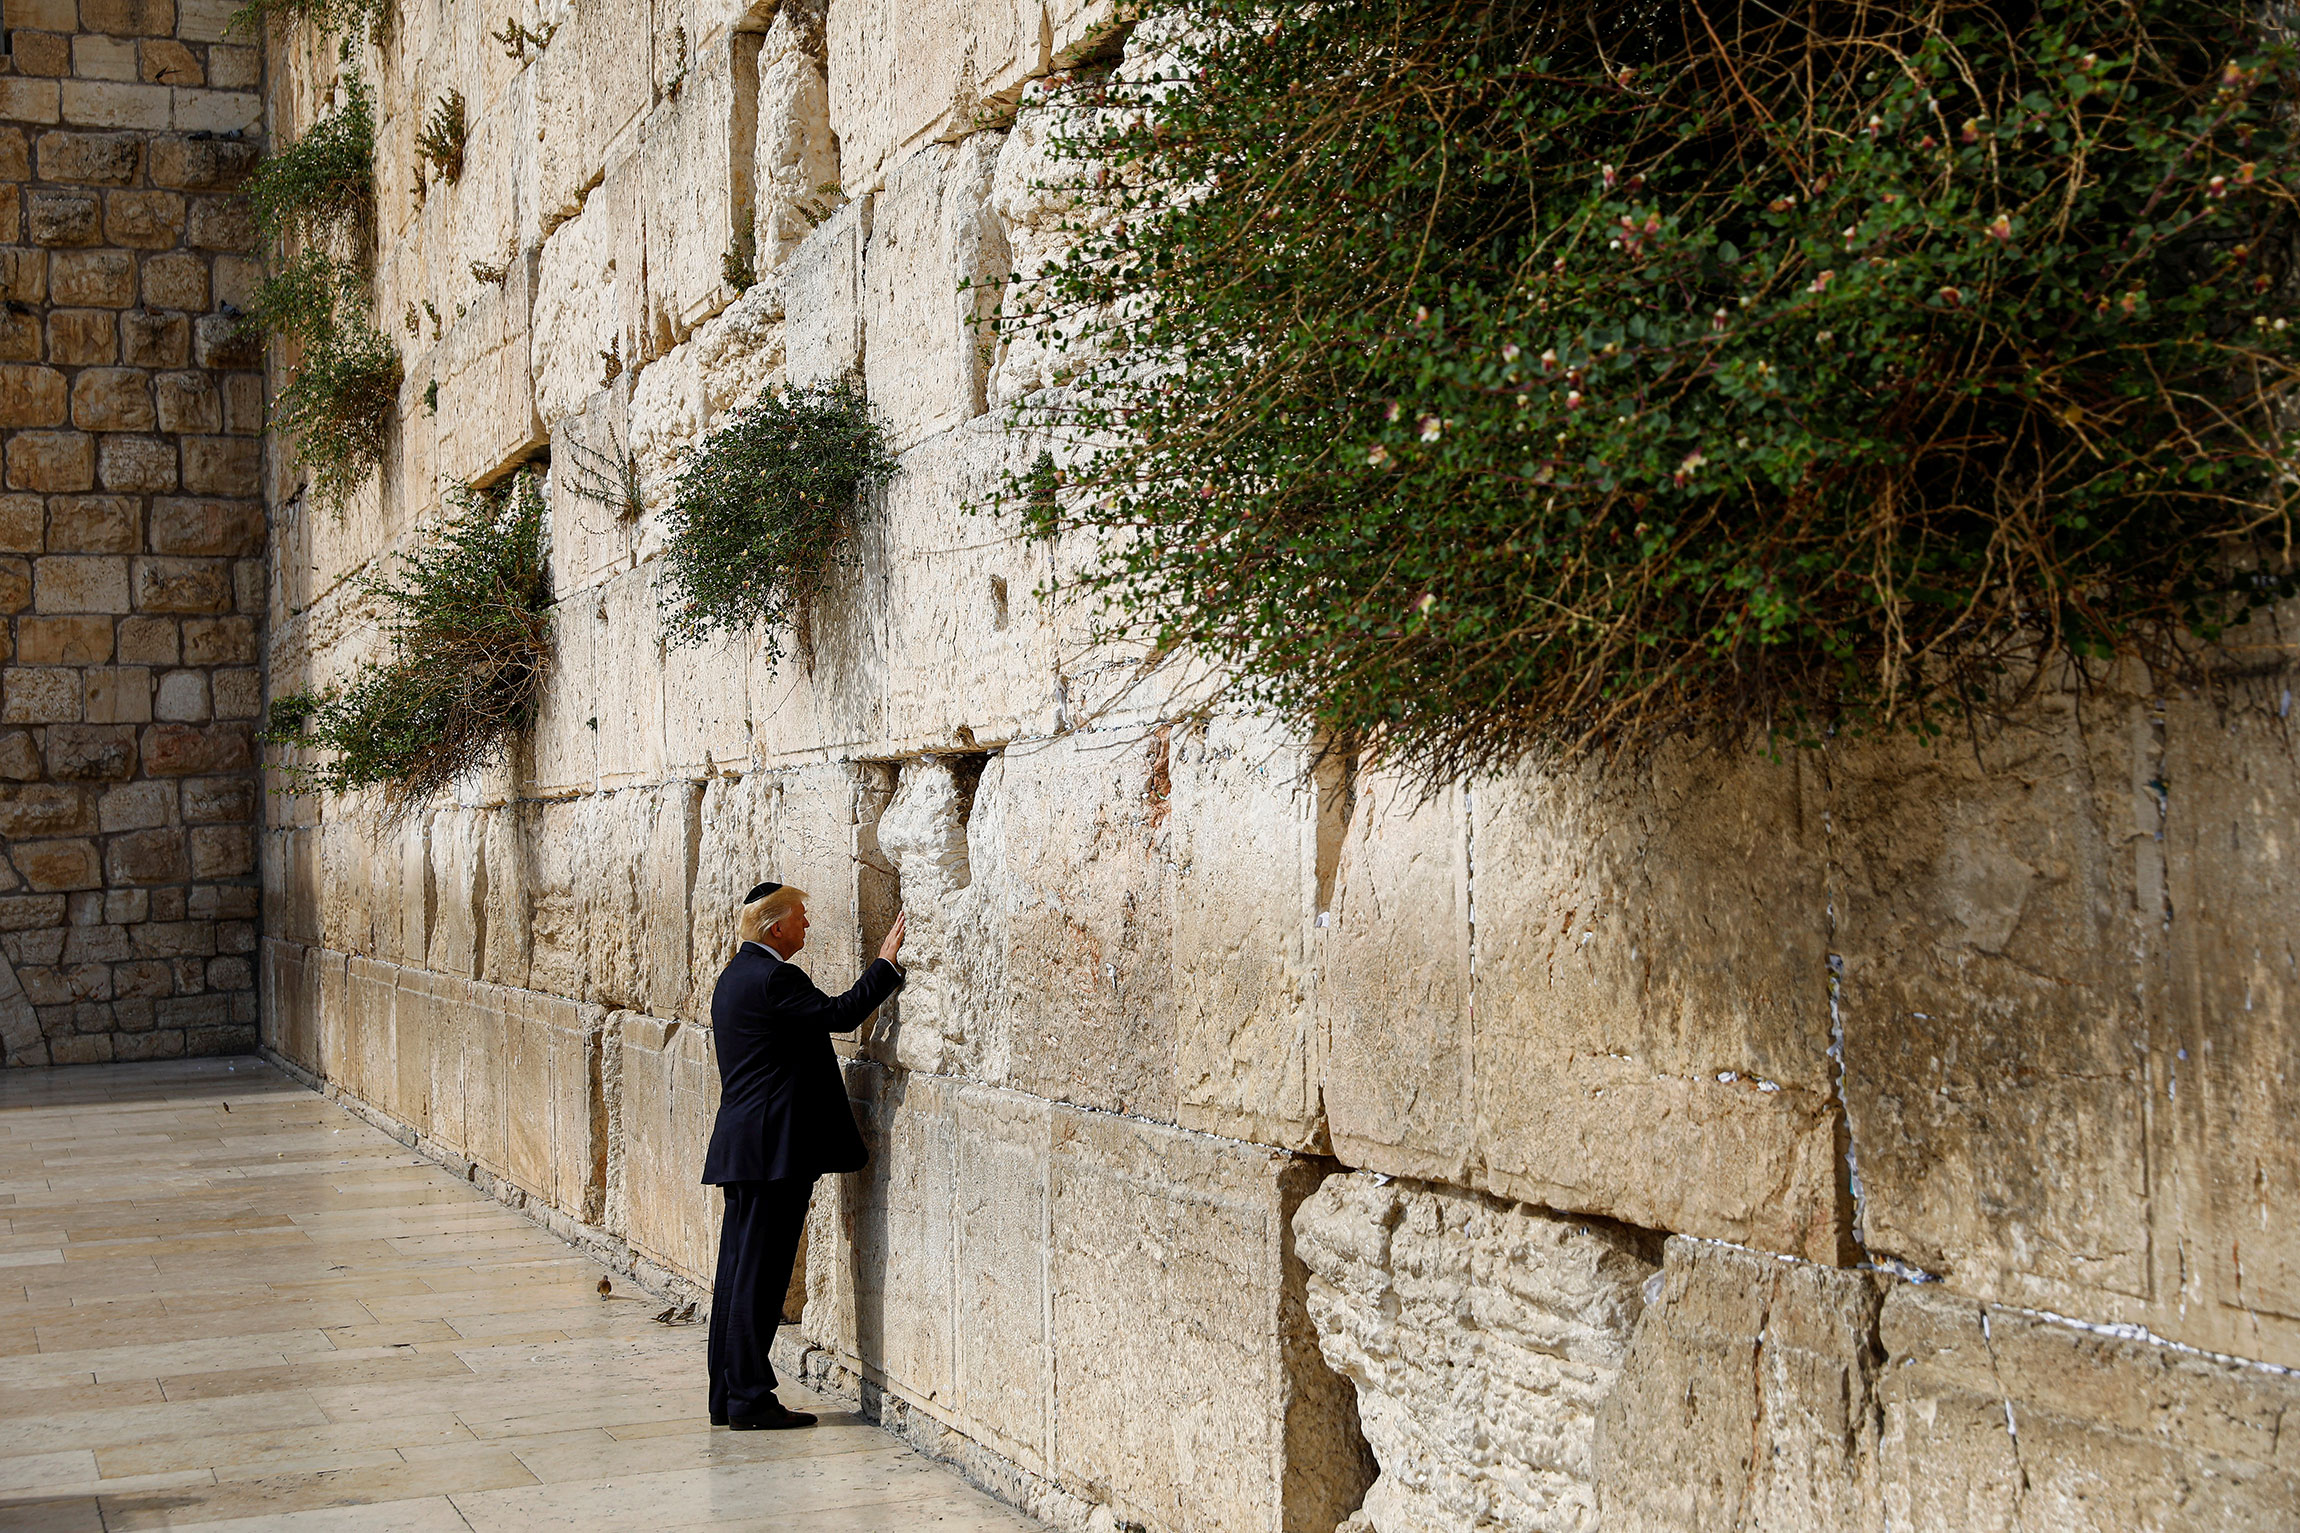 В мае 2017 года он стал первым действующим президентом США, который посетил Храм Гроба Господня и побывал у Стены Плача в Иерусалиме. В том&nbsp;же году он признал этот город столицей Израиля и объявил о переносе американского посольства из Тель-Авива, что вызвало протесты в Палестине